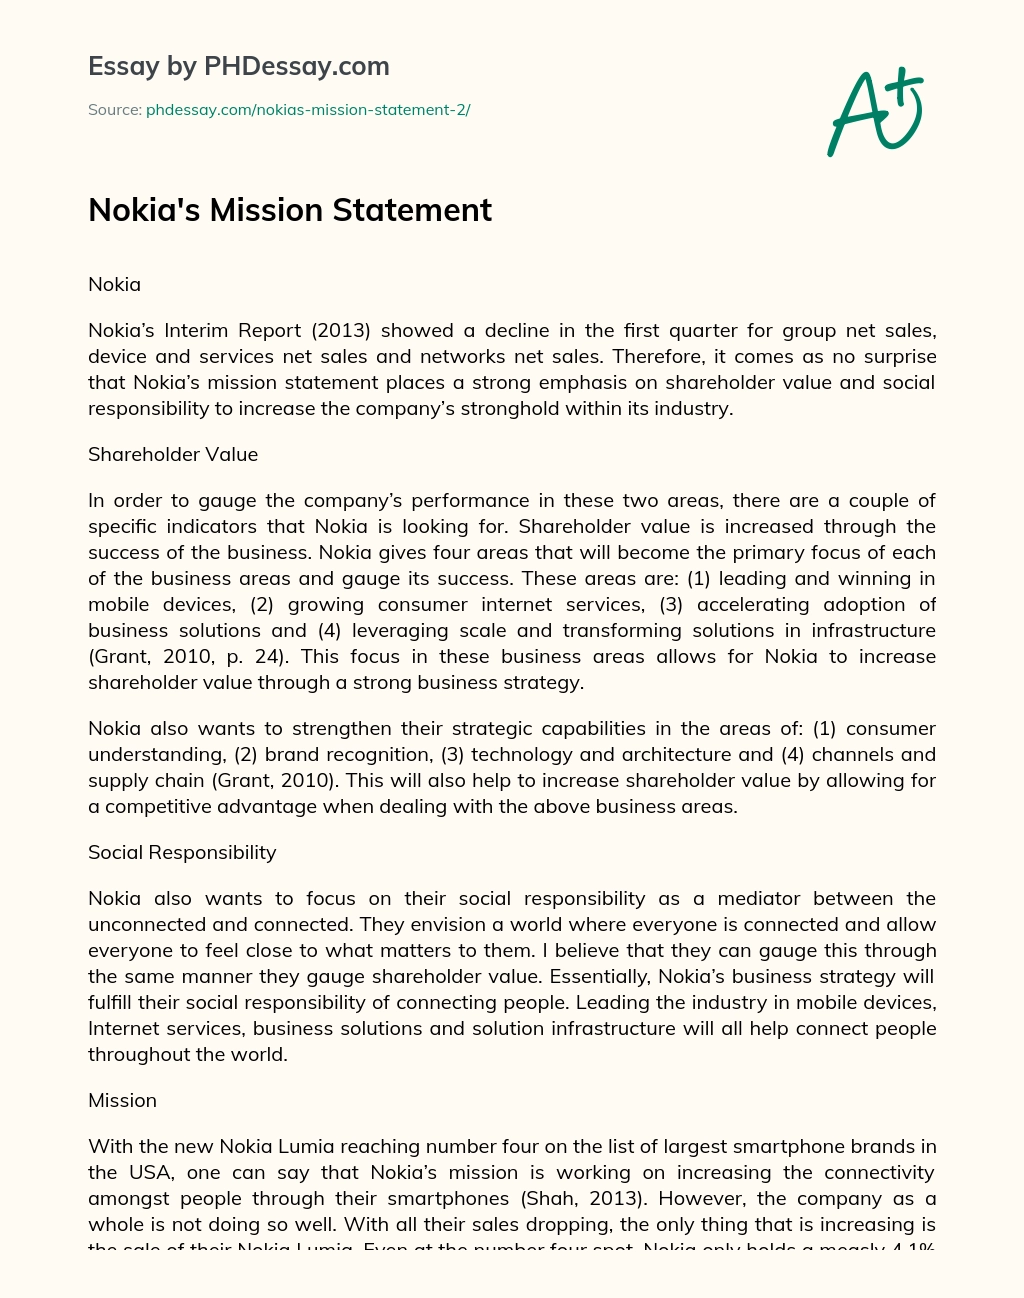 Nokia’s Mission Statement essay